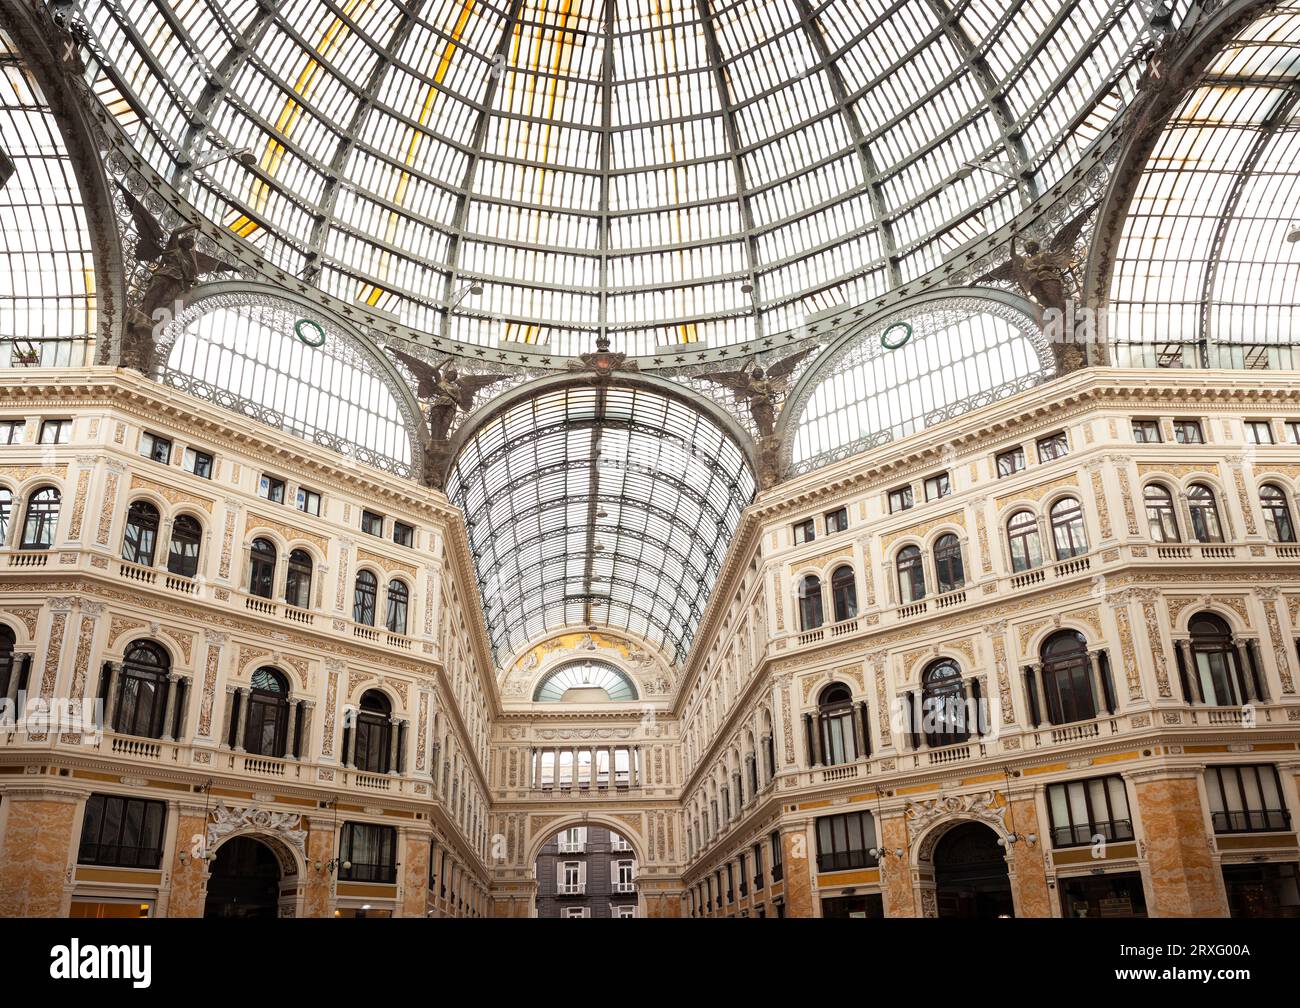 Galleria Umberto 1, galerie marchande populaire construite à la fin du 19e siècle dans la phase de reconstruction de la ville de Naples, en Italie Banque D'Images